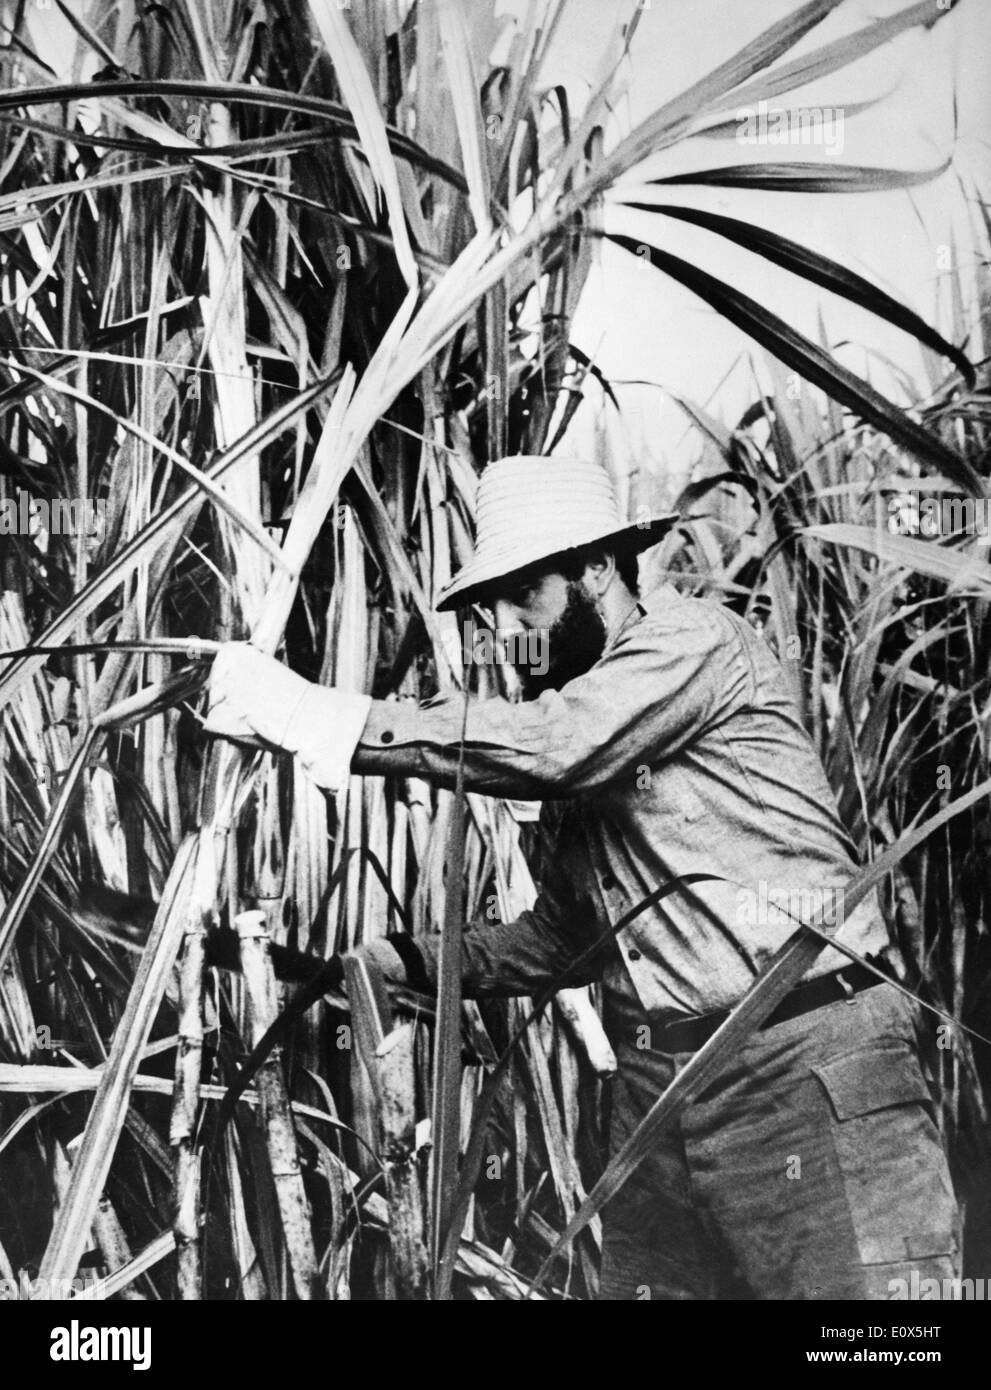 Fidel Castro cutting sugarcane Stock Photo